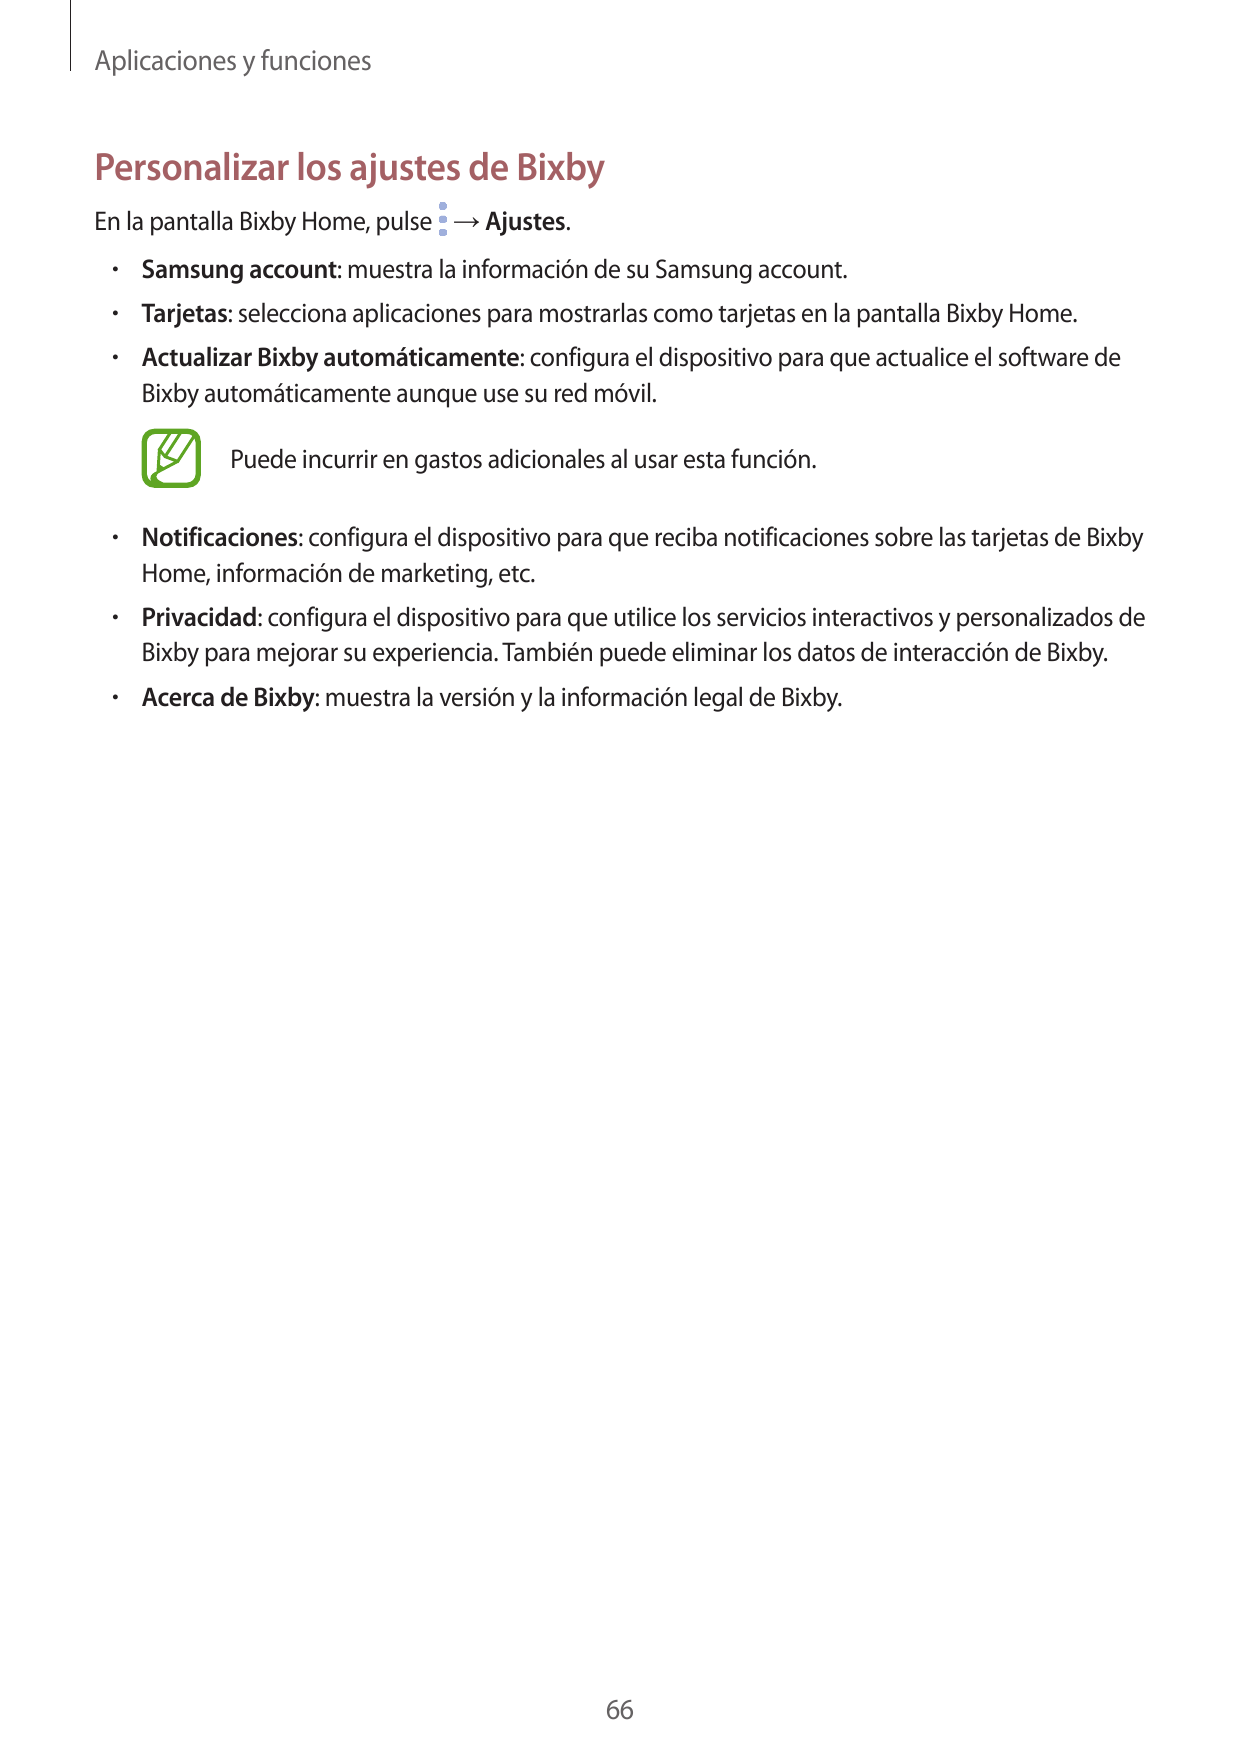 Aplicaciones y funcionesPersonalizar los ajustes de BixbyEn la pantalla Bixby Home, pulse → Ajustes.• Samsung account: muestra l